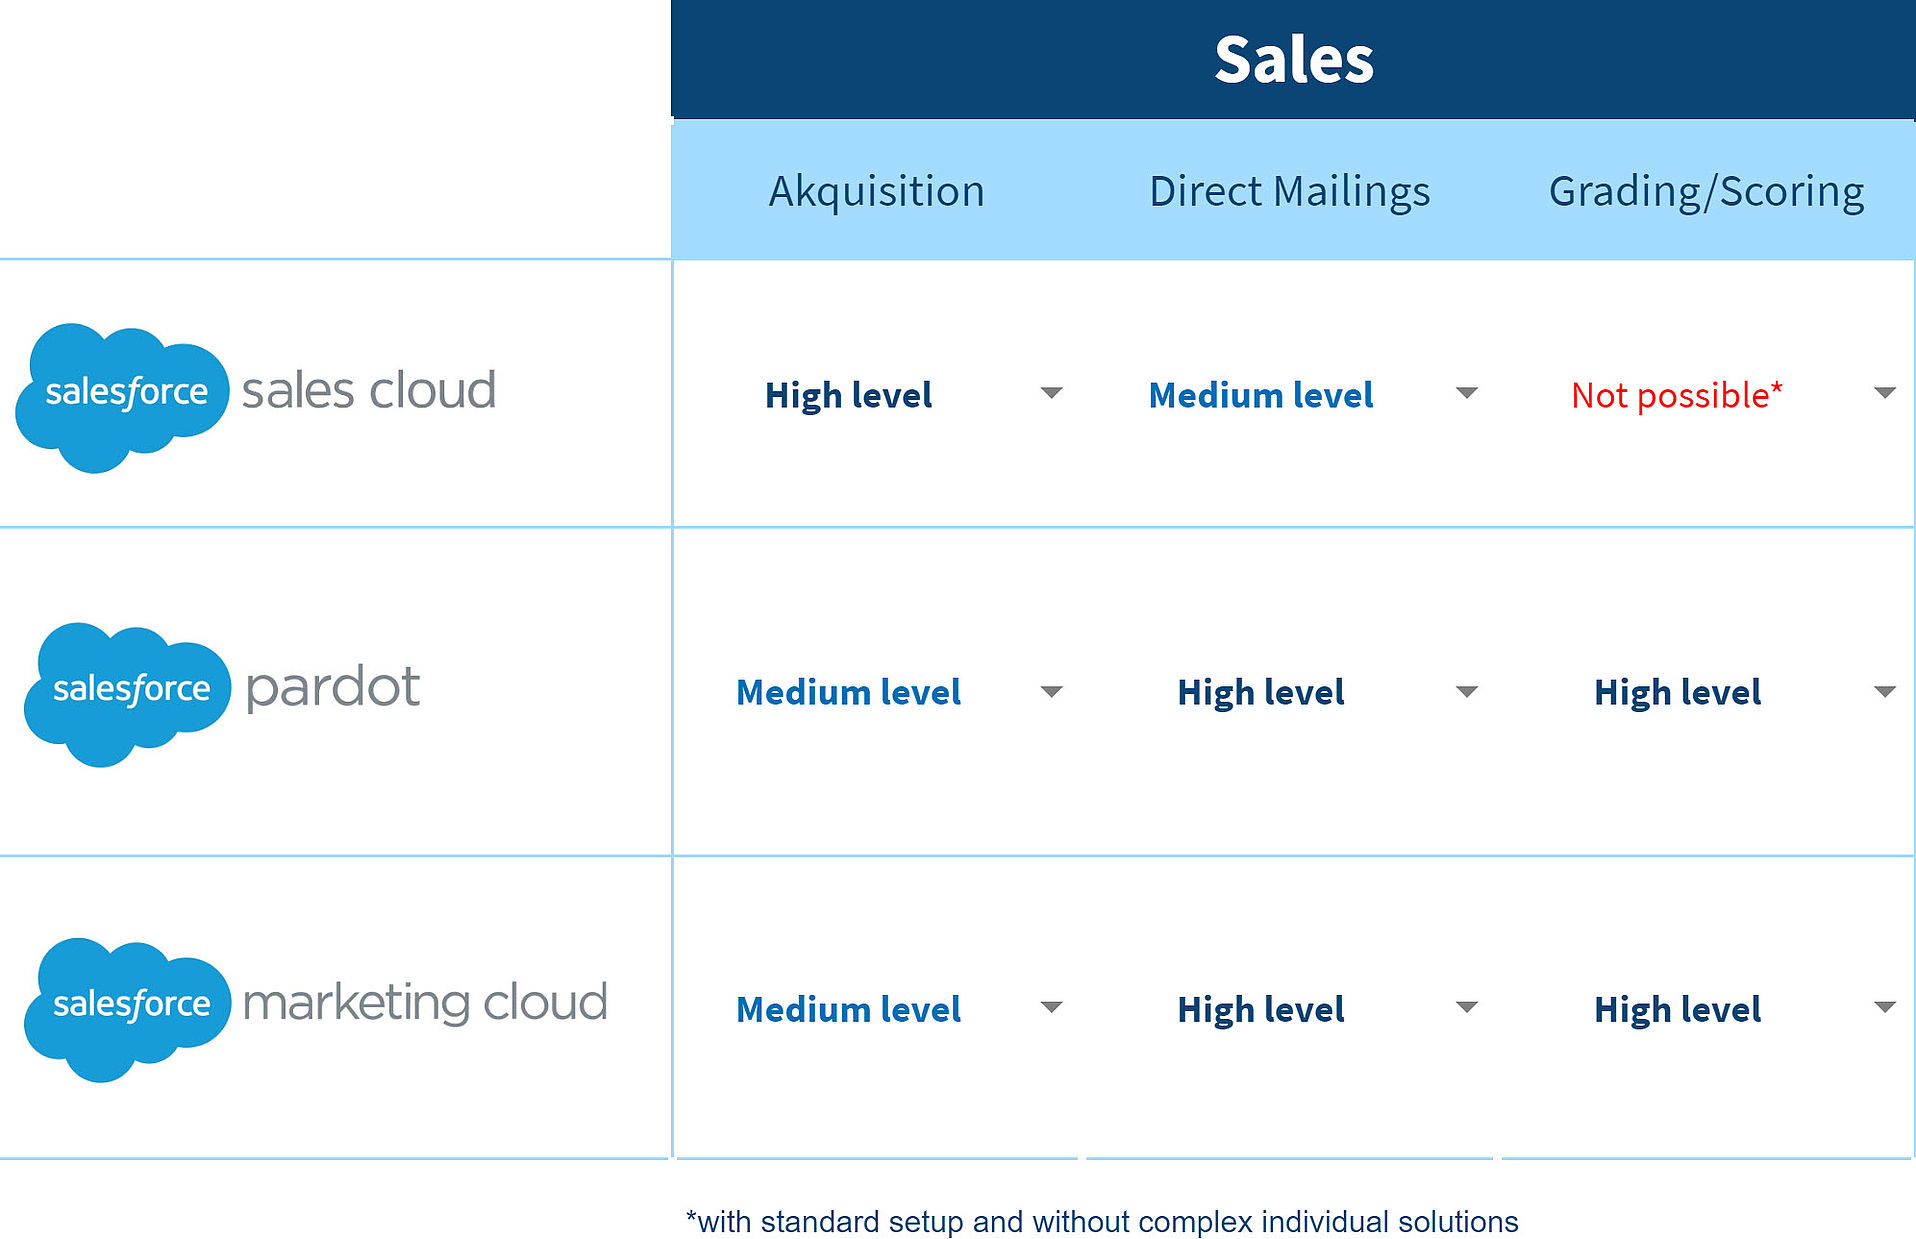 Sales Übersicht zu den Salesforce Produkten